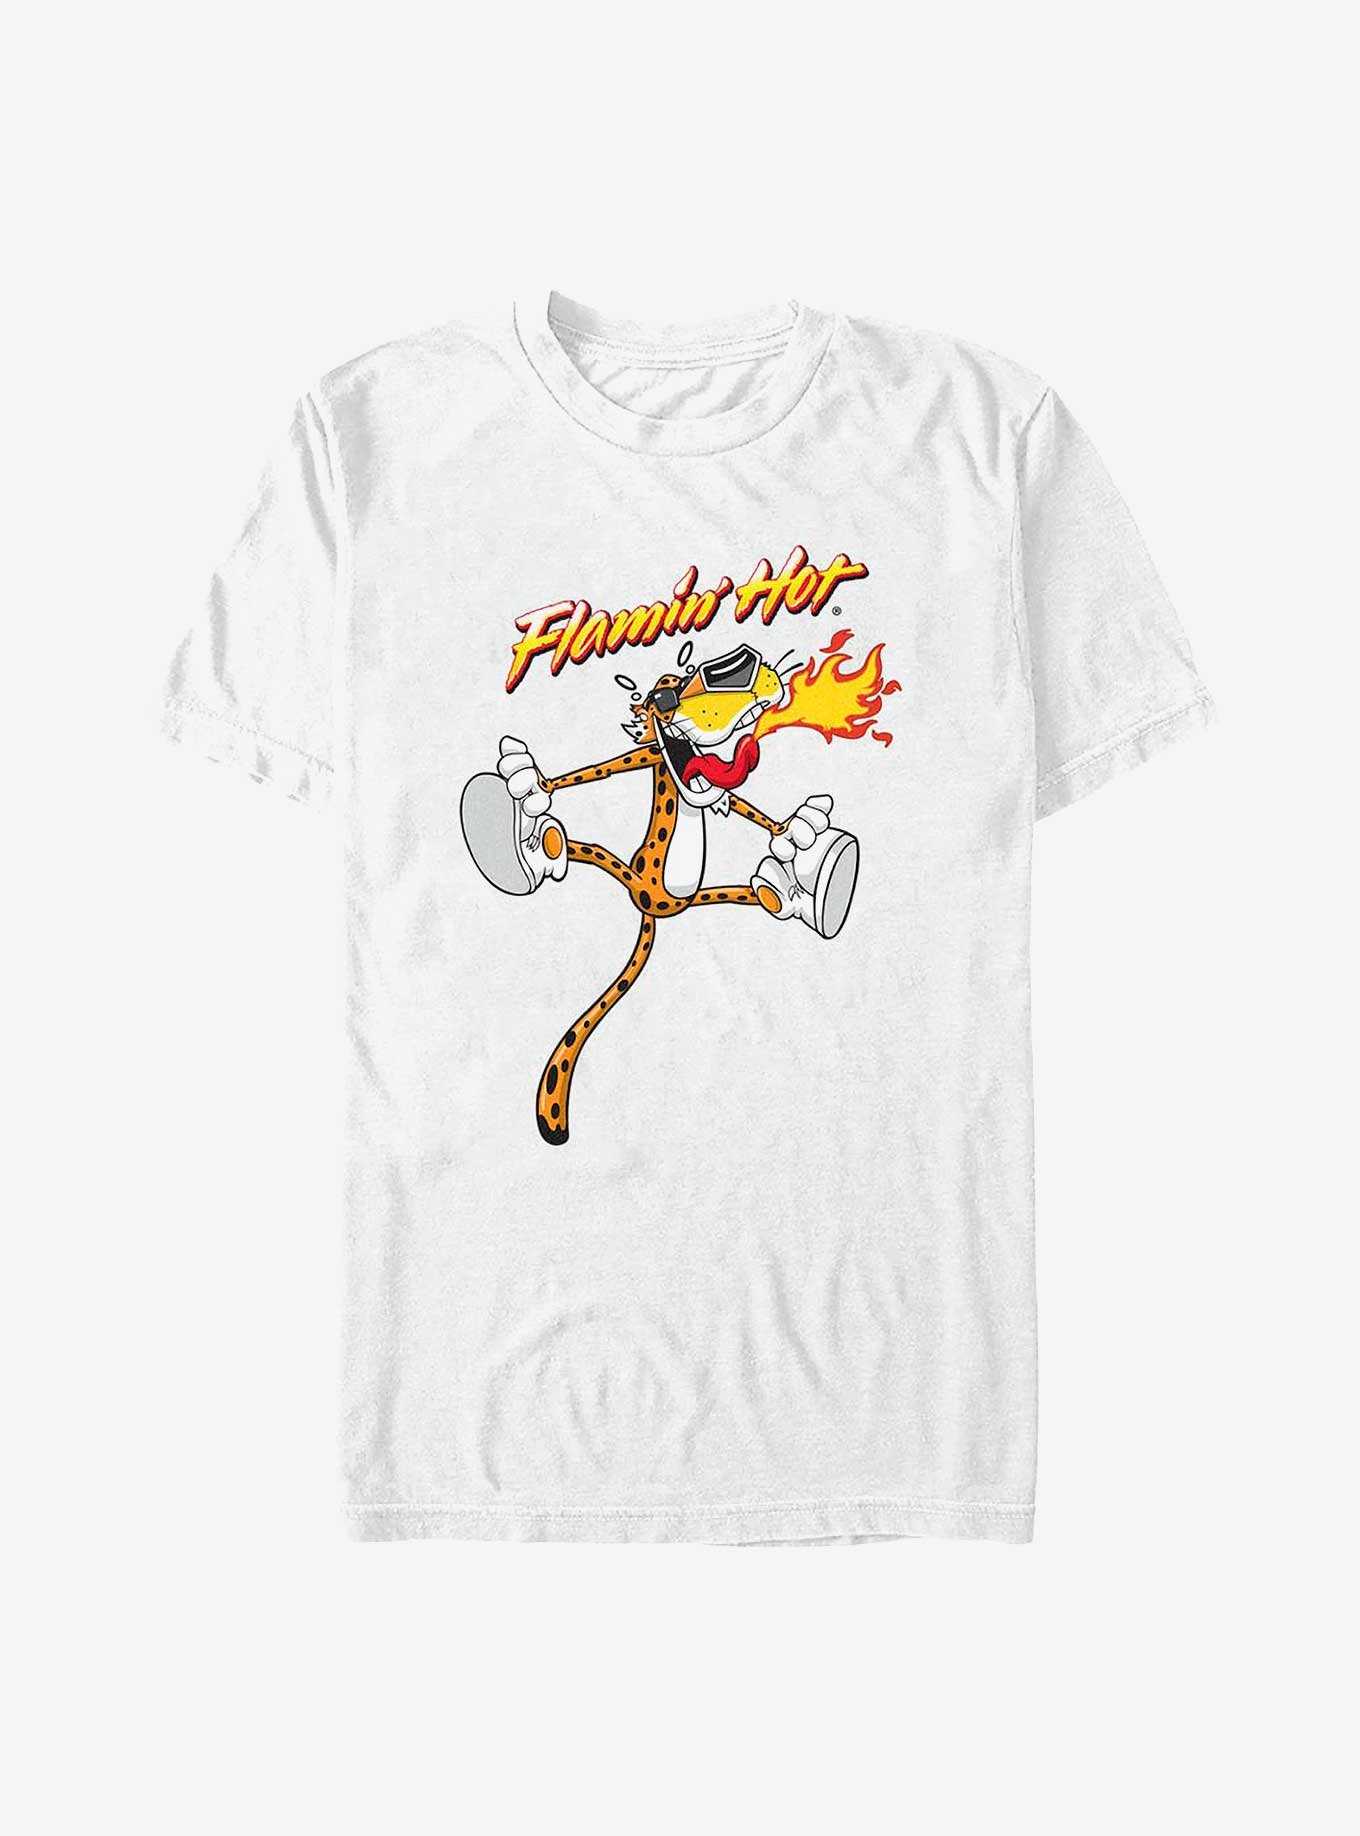 Cheetos Flamin' Hot Chester Cheetah  T-Shirt, , hi-res